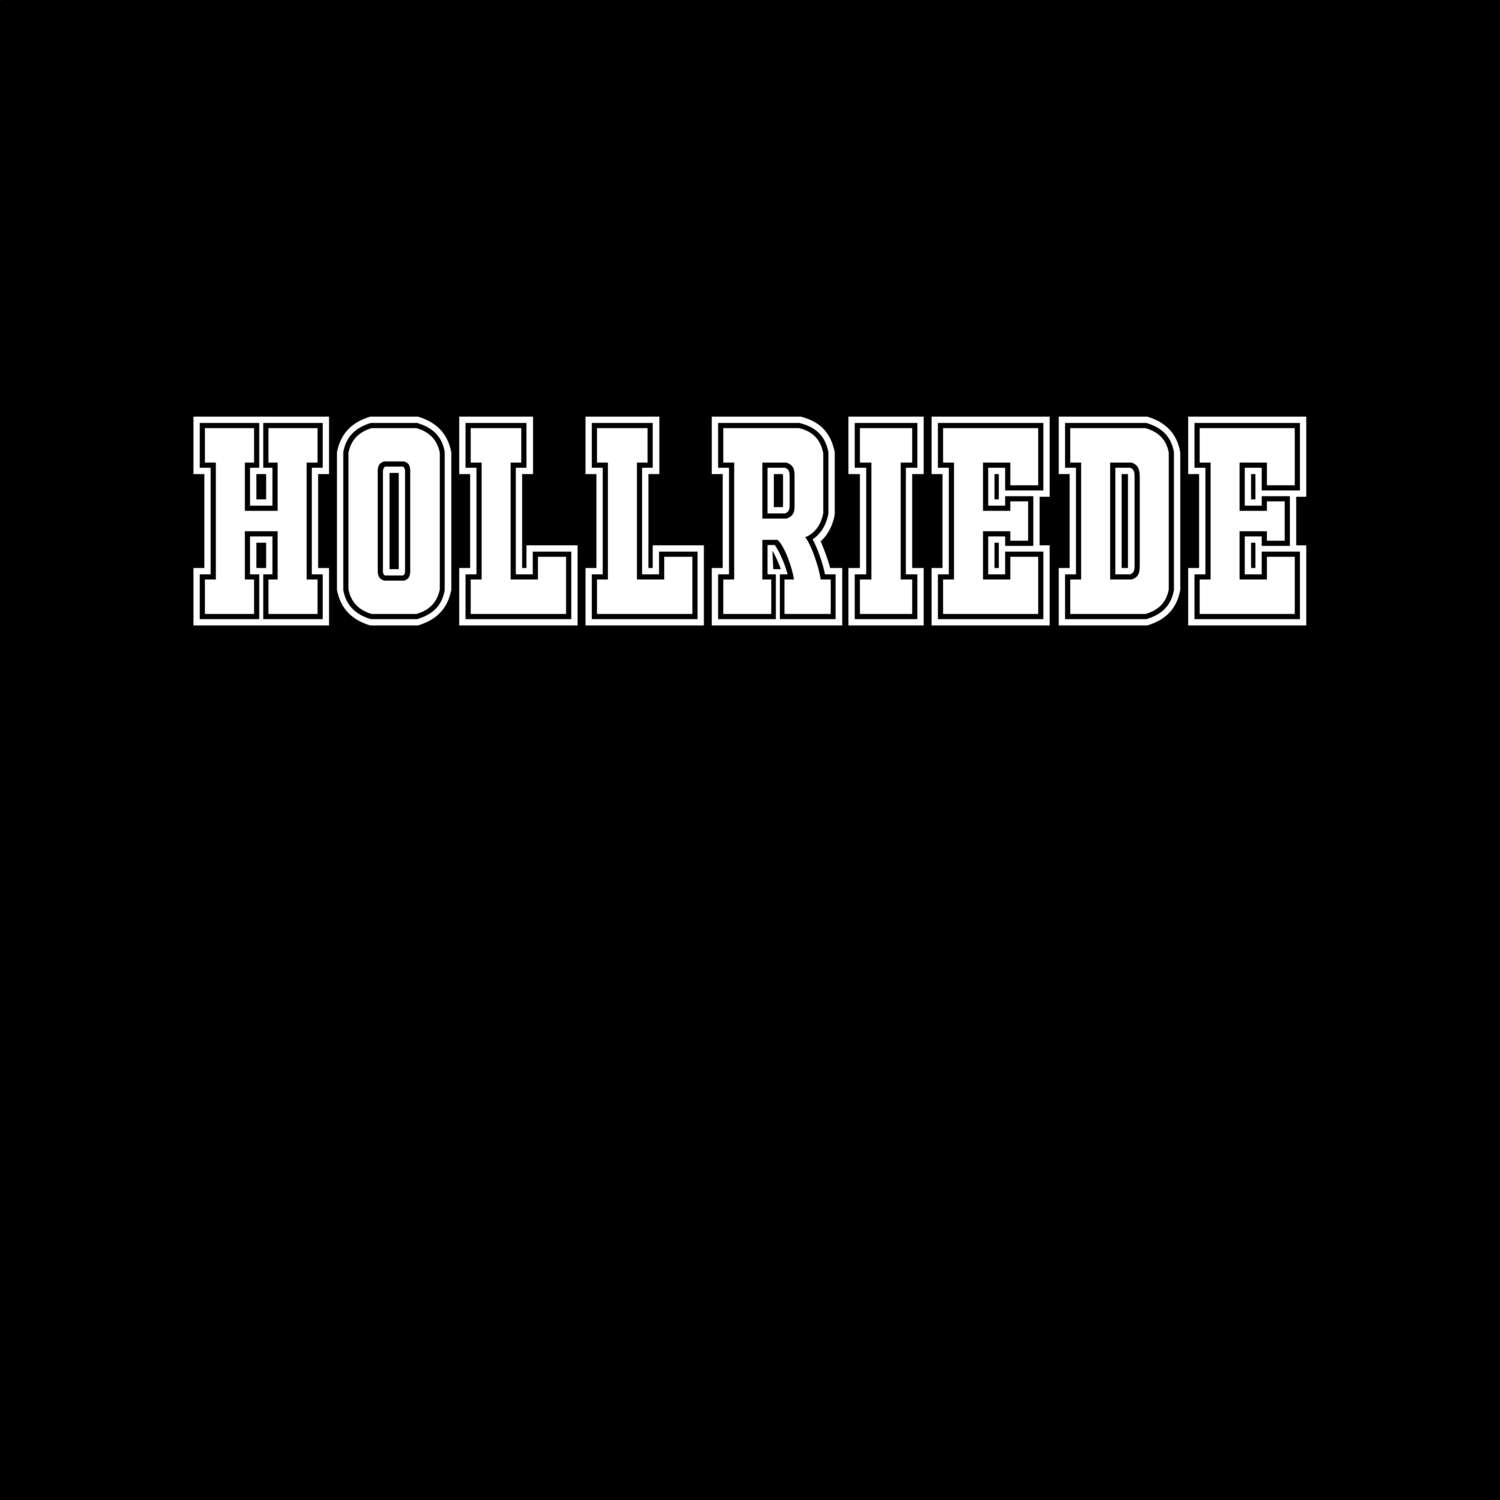 Hollriede T-Shirt »Classic«